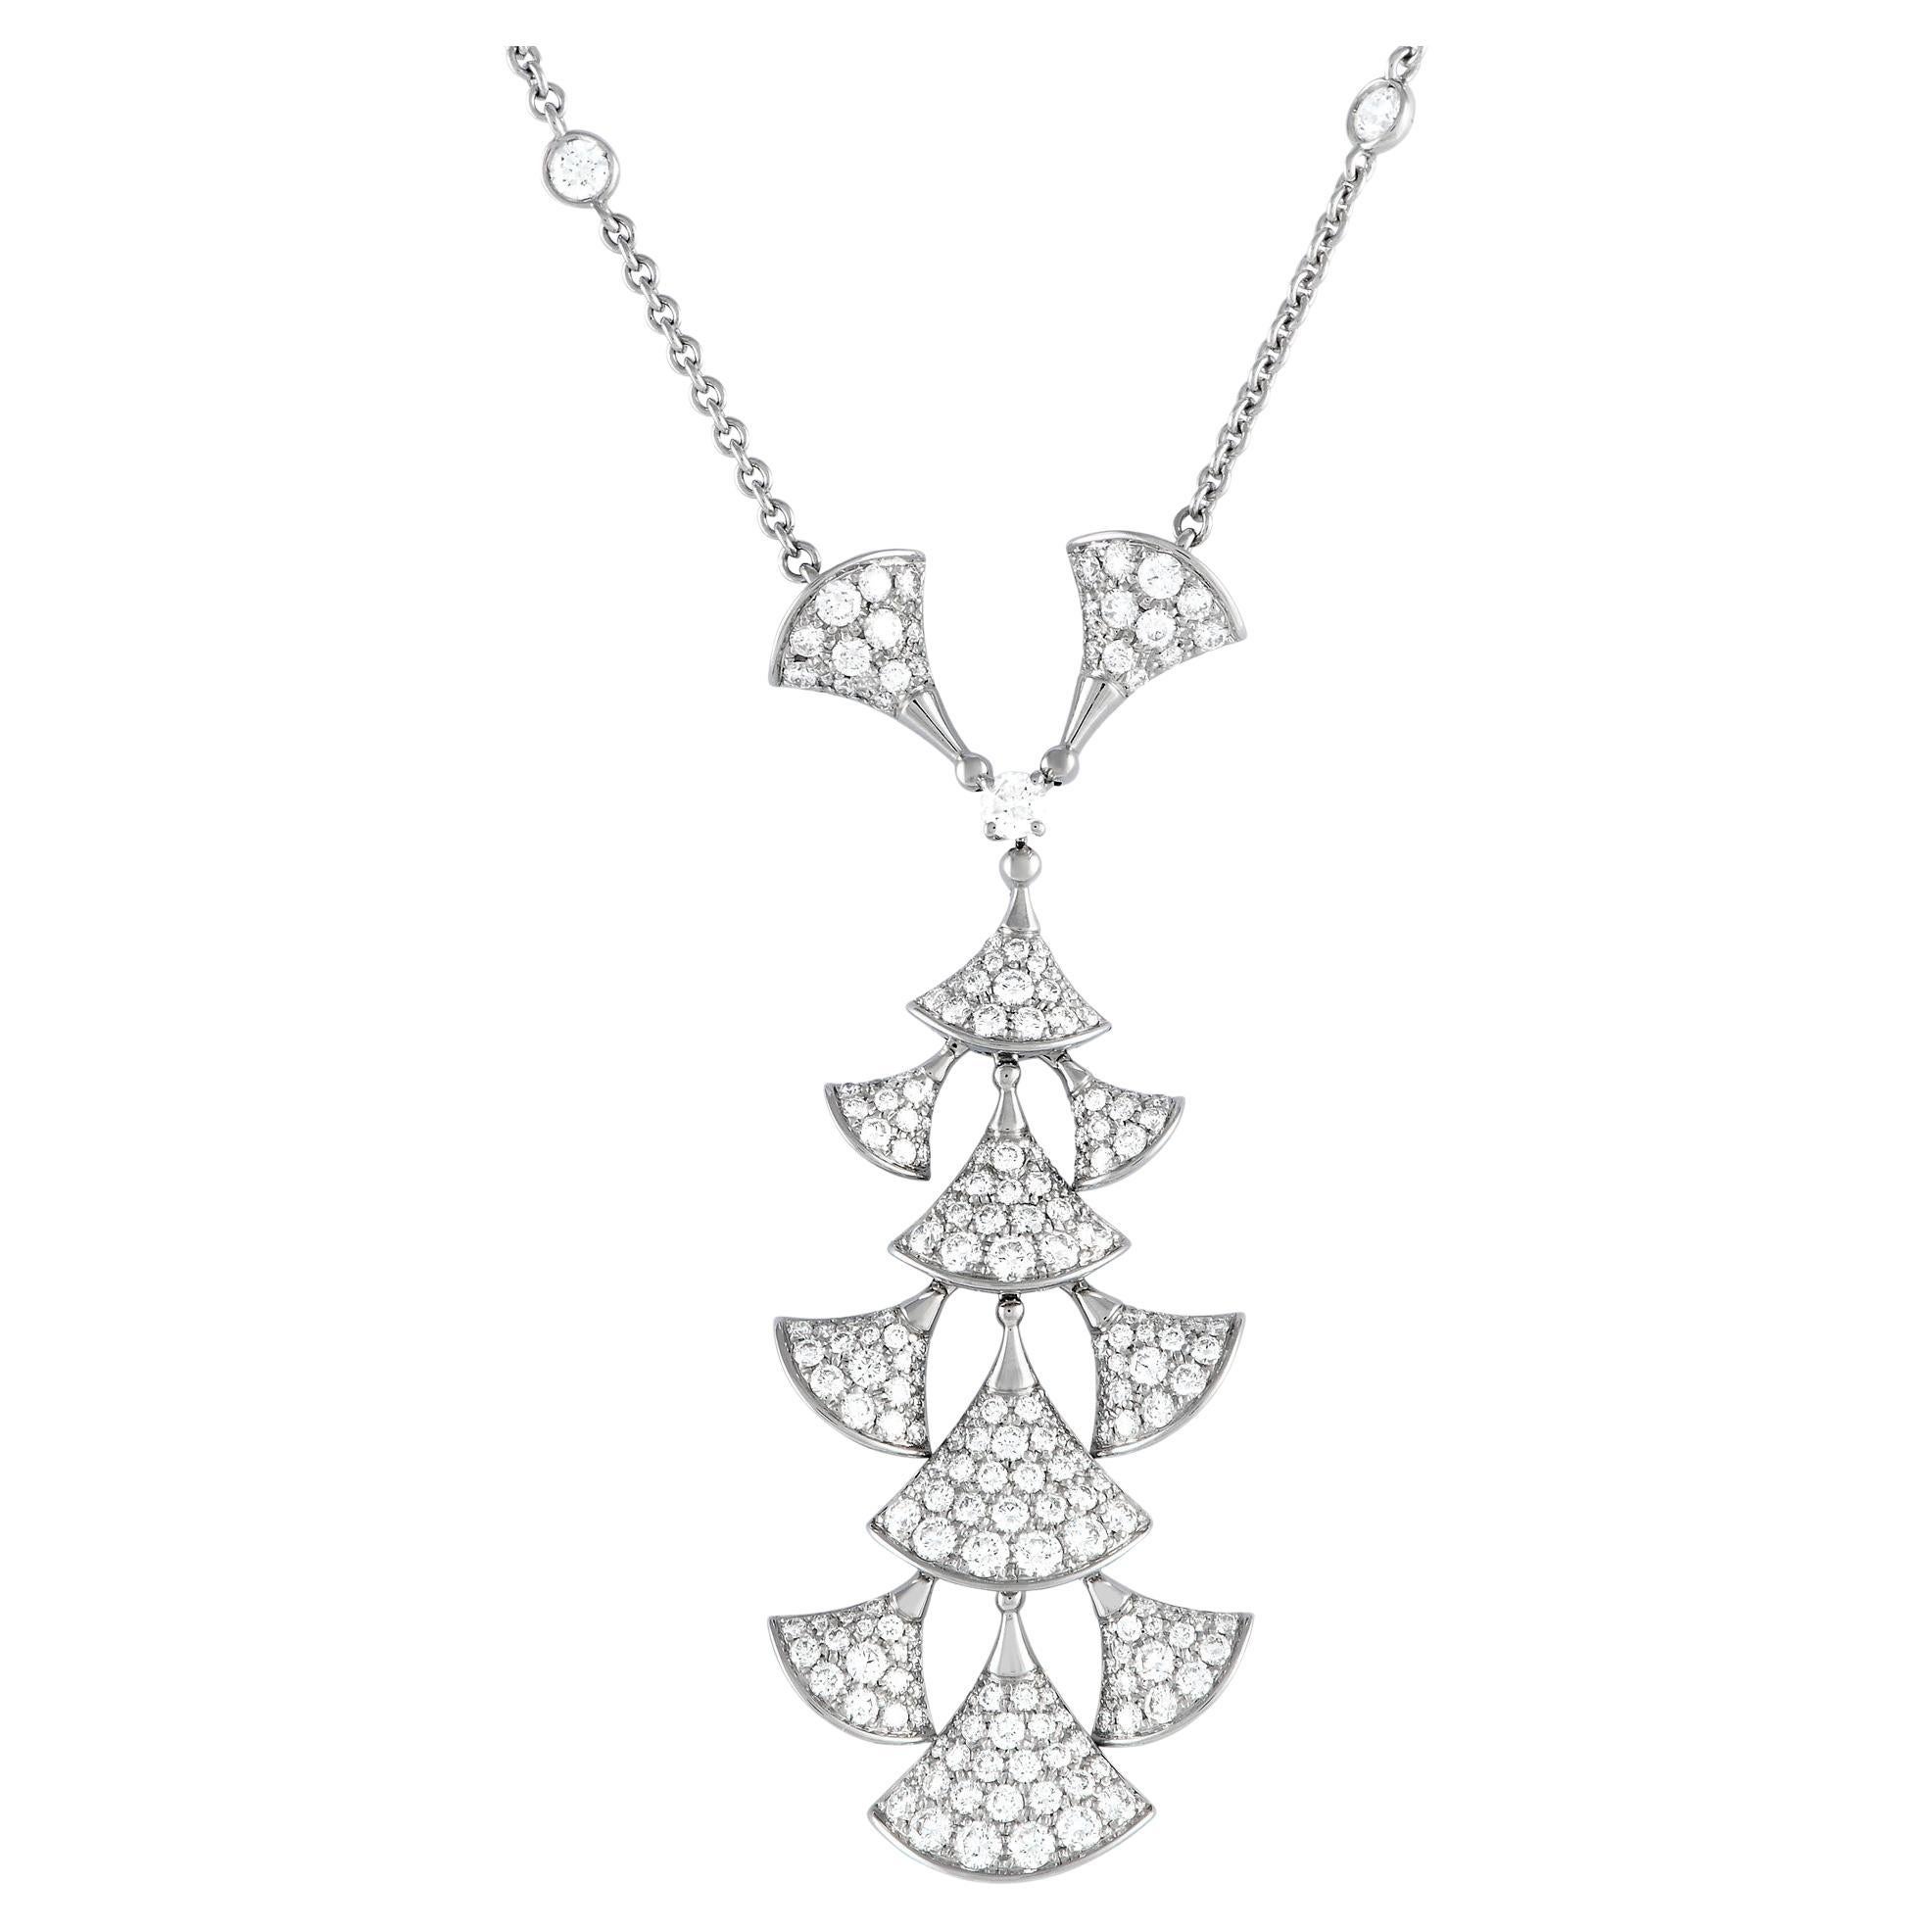 Bvlgari Diva's Dream 18K White Gold 3.75ct Diamond Necklace For Sale